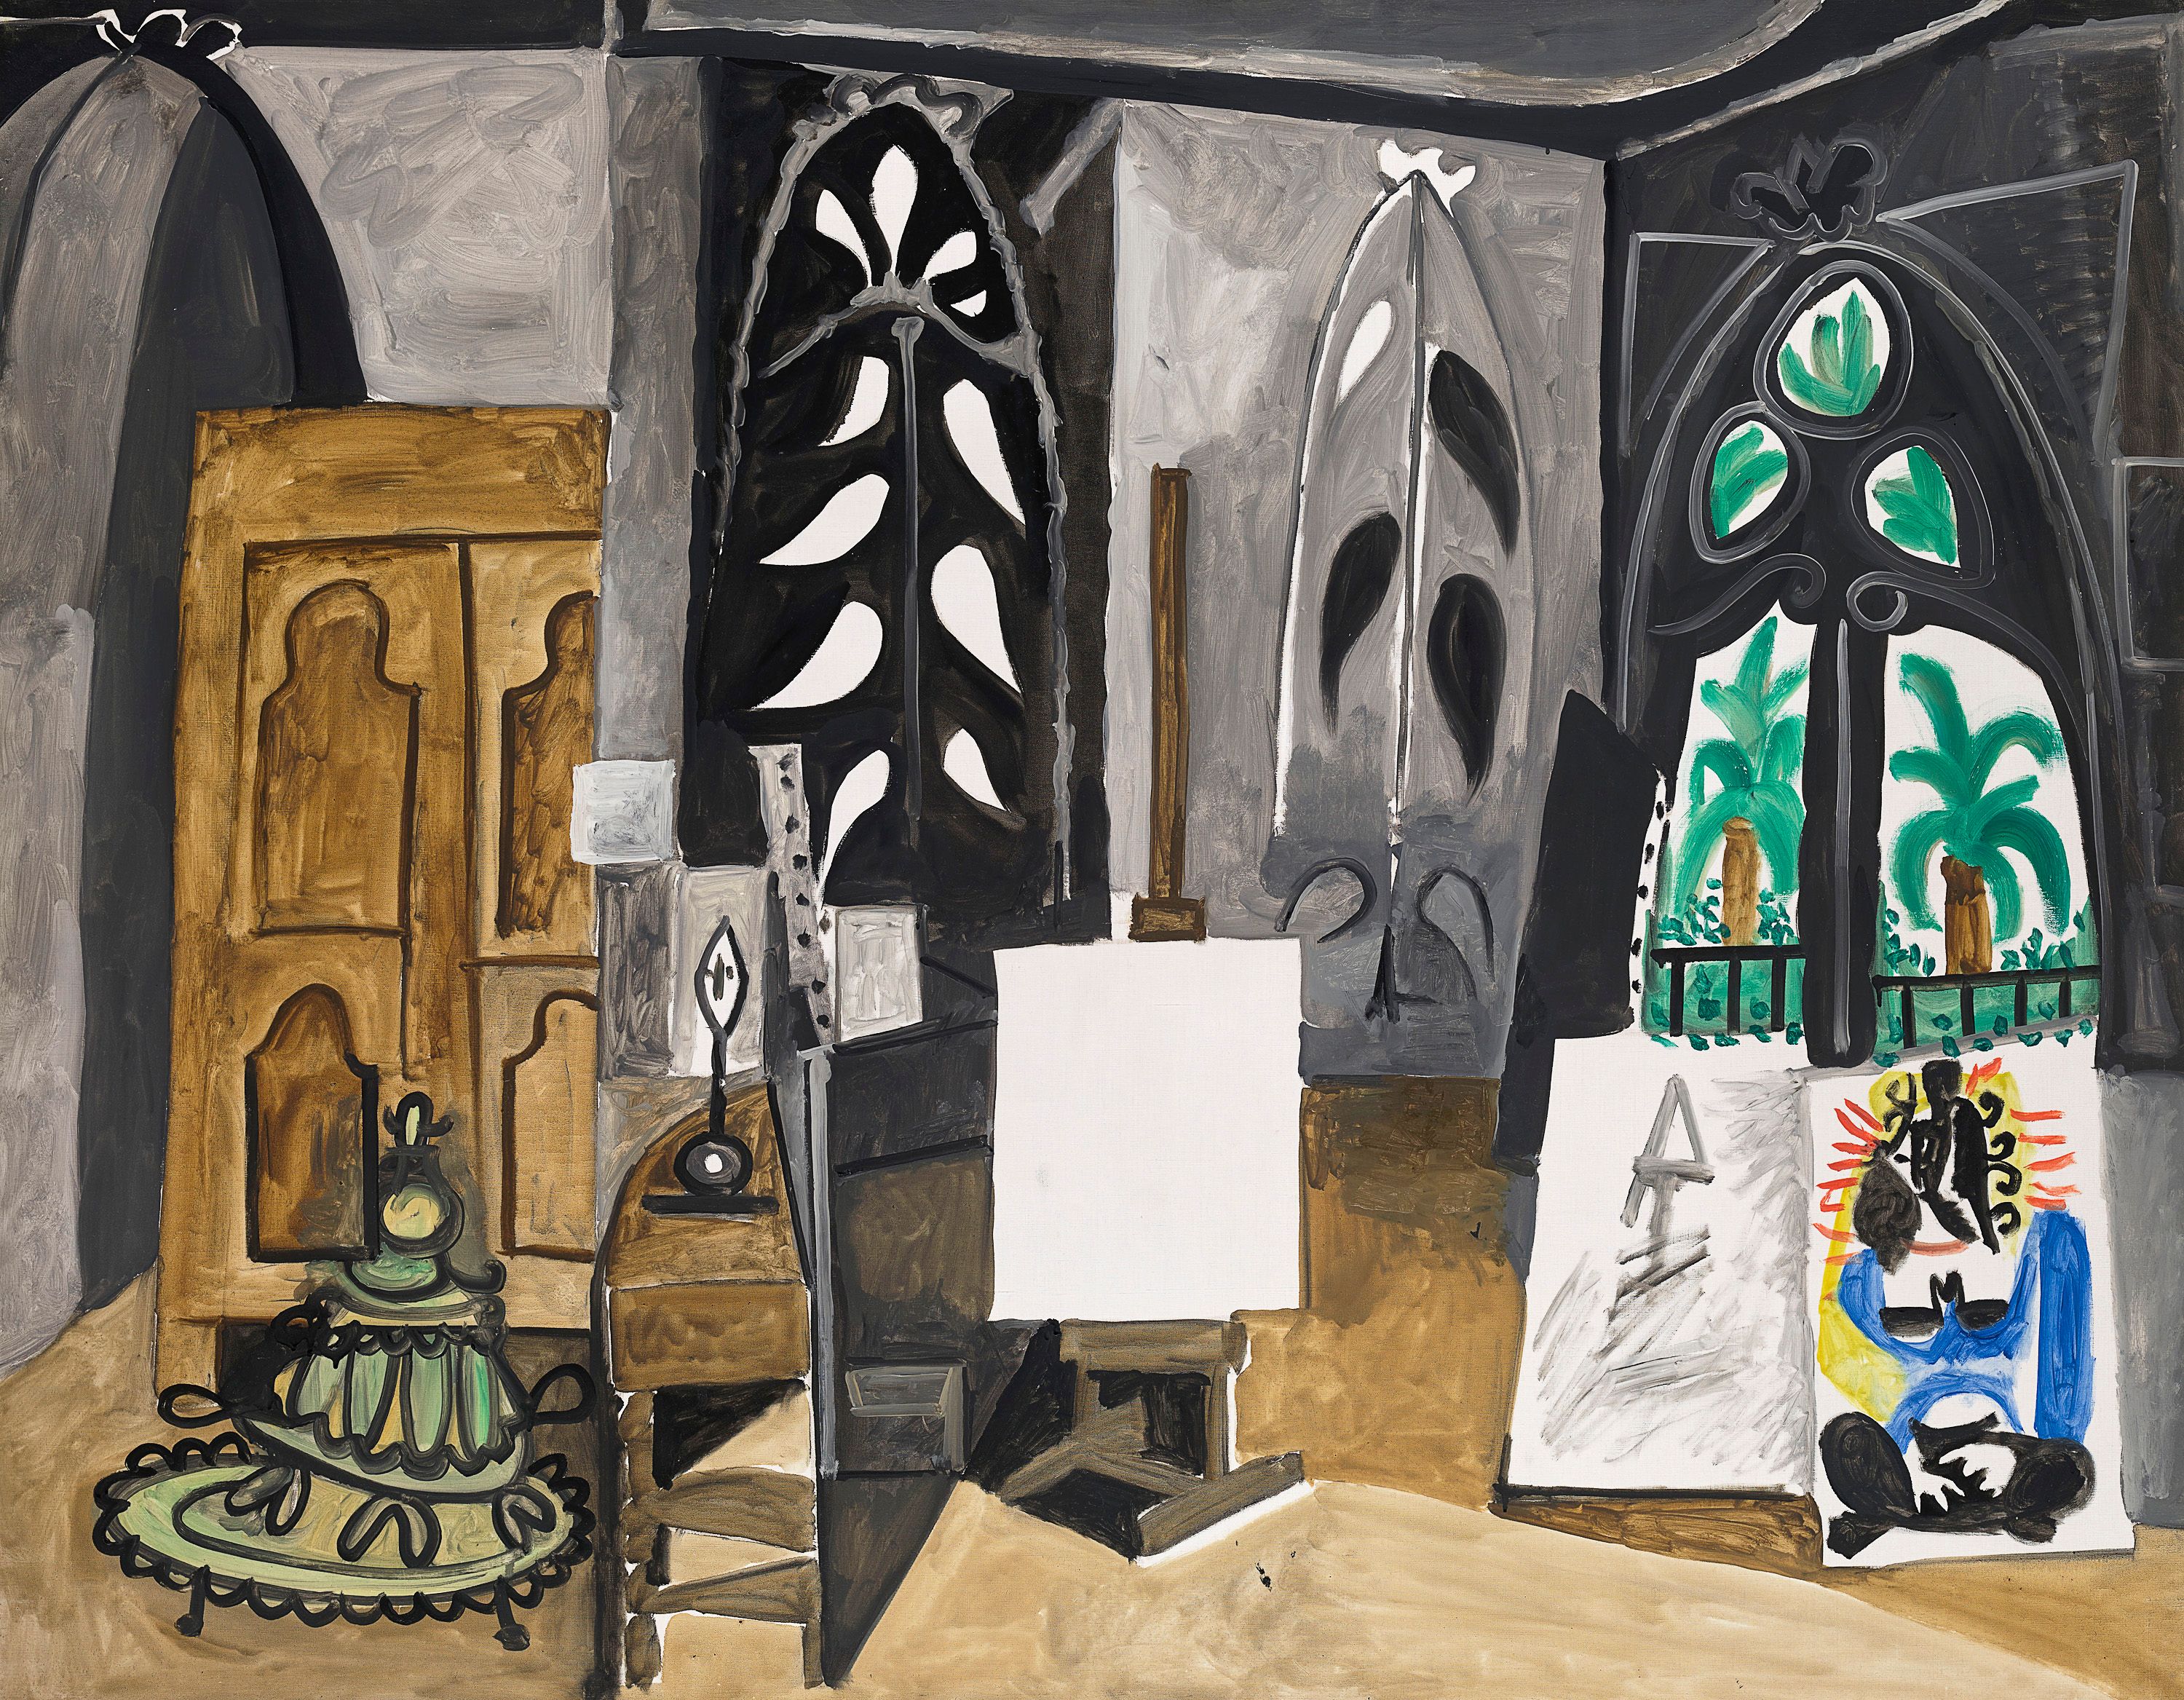 Pablo Picasso, <em>The Studio at La Californie (L’Atelier de La Californie)</em>, 1956, oil on canvas, 114 x 146 cm, Musée national Picasso-Paris. Donated in lieu of tax, 1979. © Succession Picasso/Copyright Agency, 2022. Photo © RMN-Grand Palais (Musée national Picasso-Paris) / Mathieu Rabeau